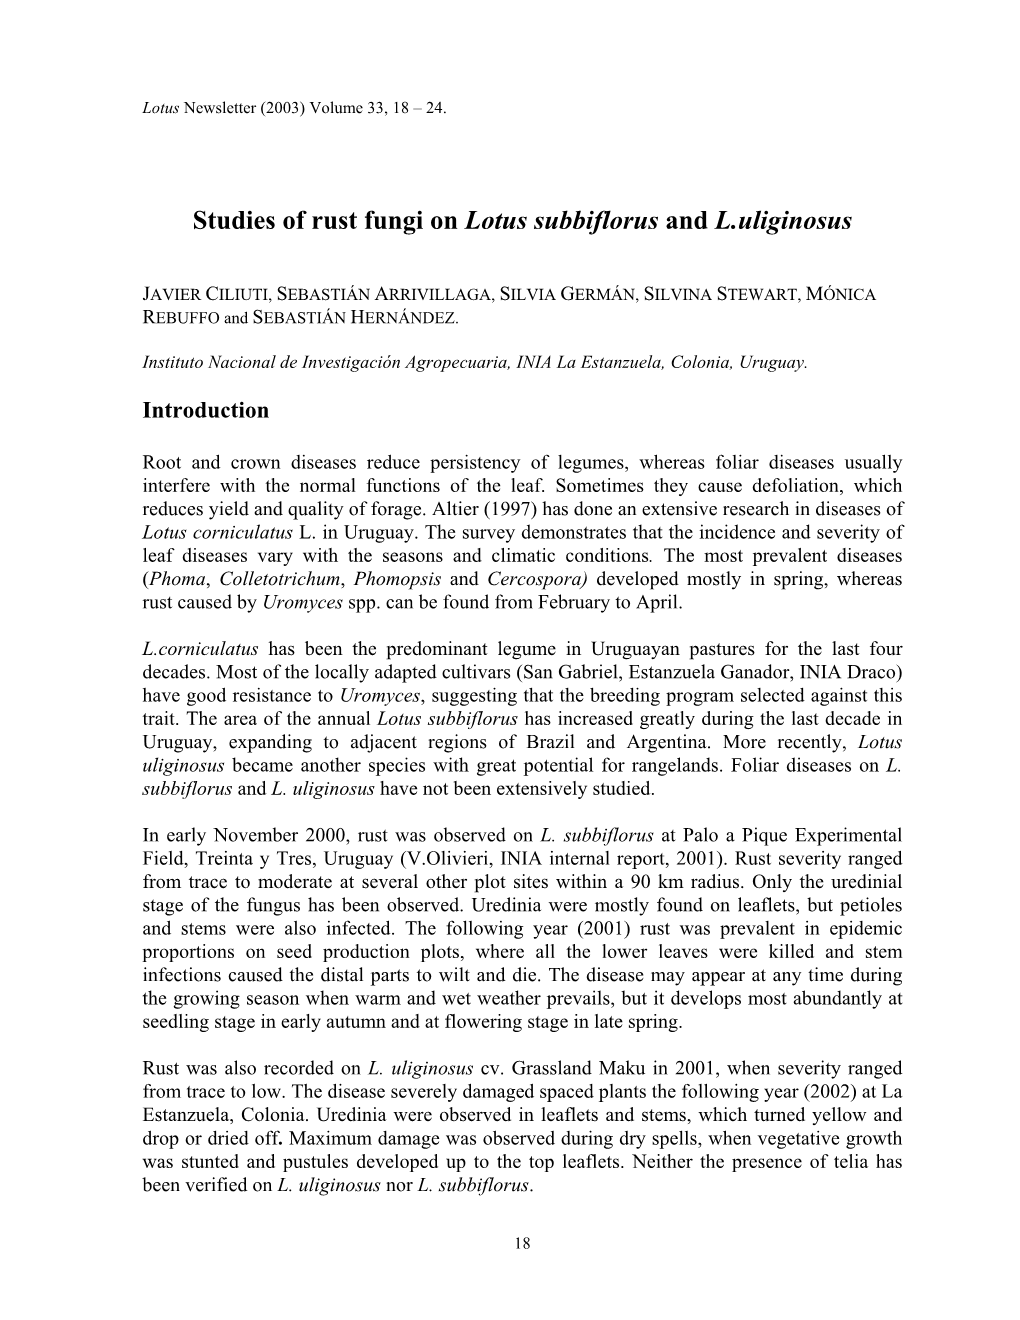 Studies of Rust Fungi on Lotus Subbiflorus and L.Uliginosus